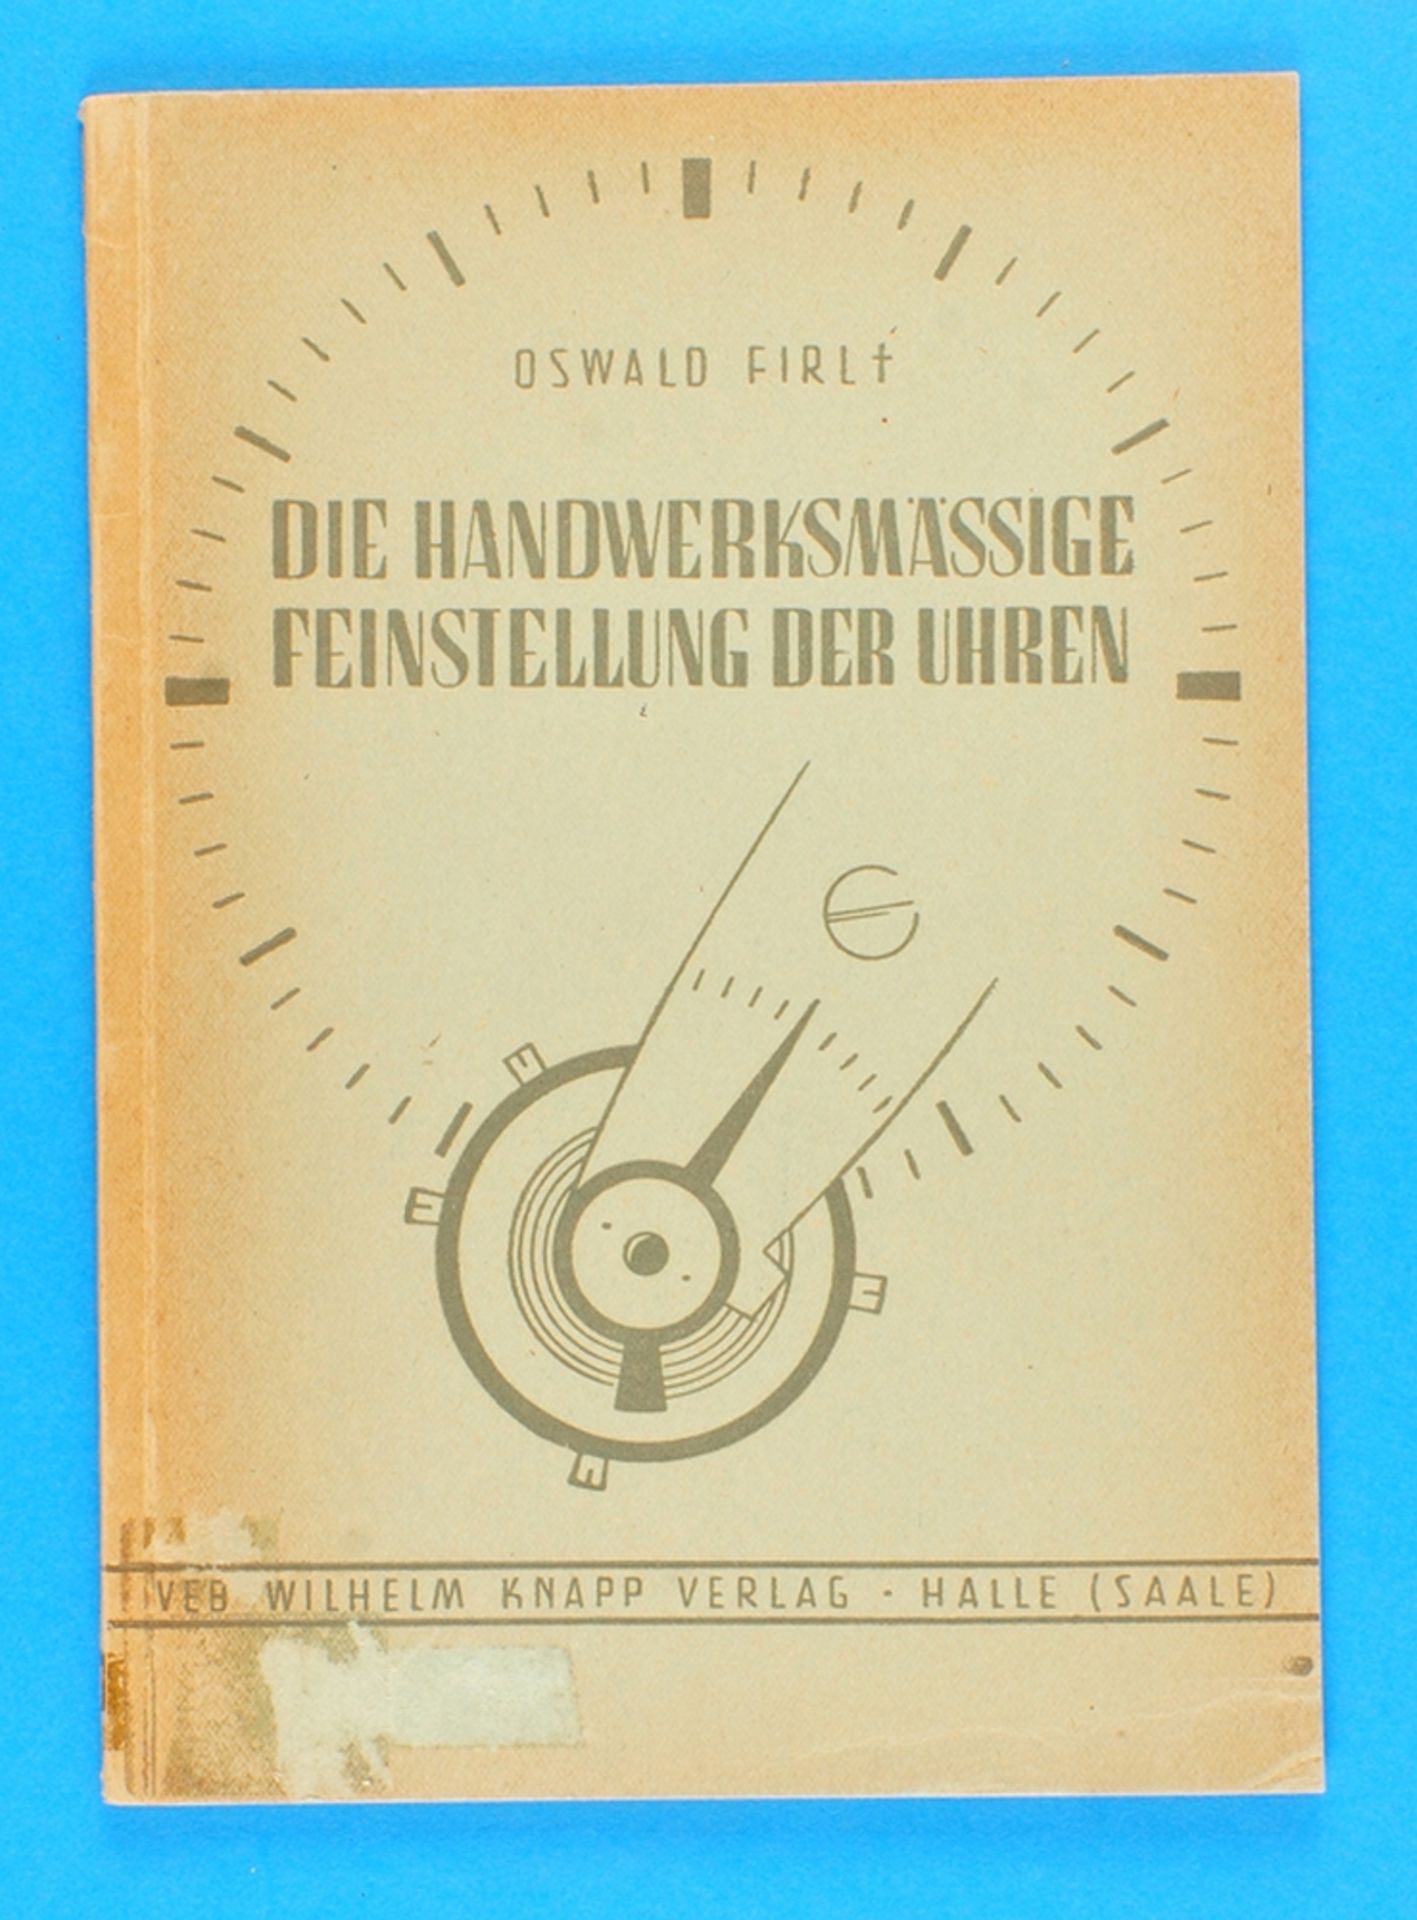 Oswald Firl, Die handwerksmäßige Feinstellung der Uhren, 1956